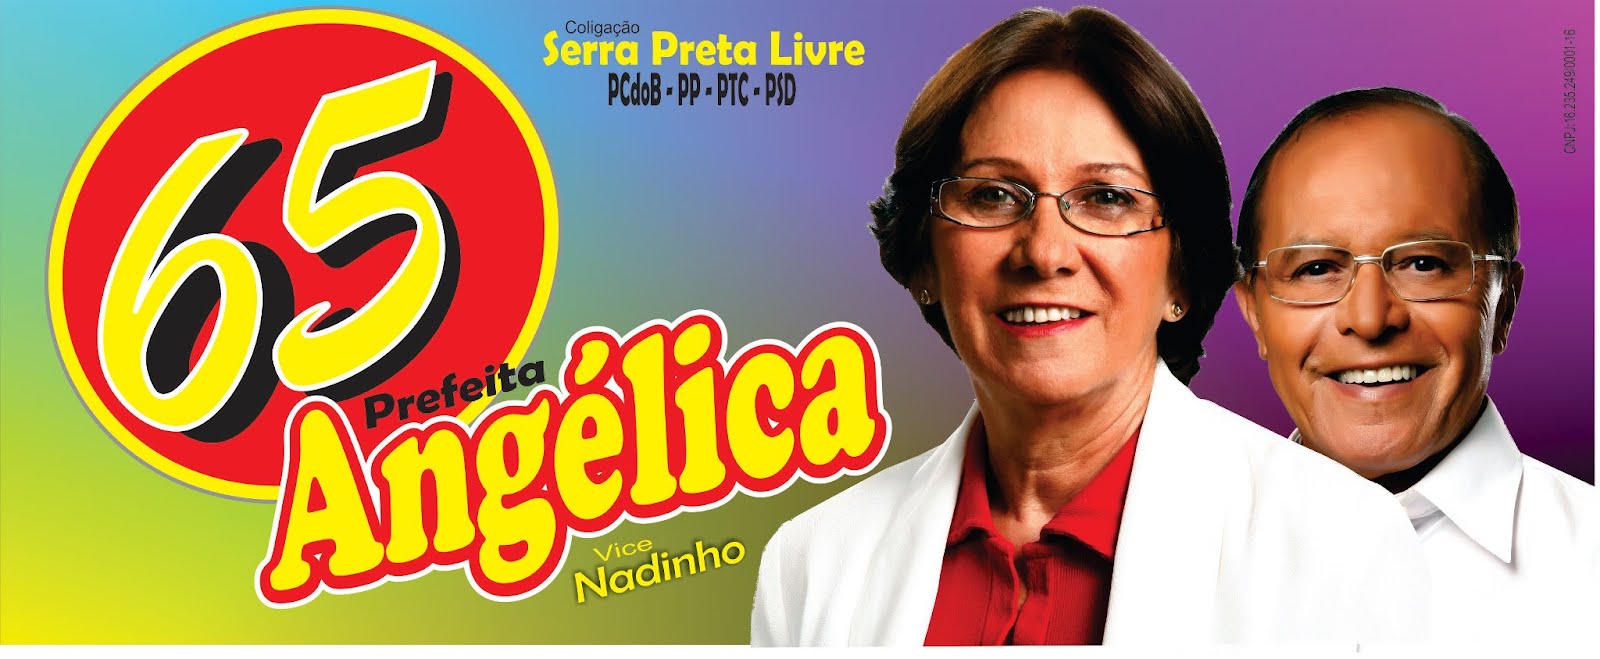 Angélica Prefeita